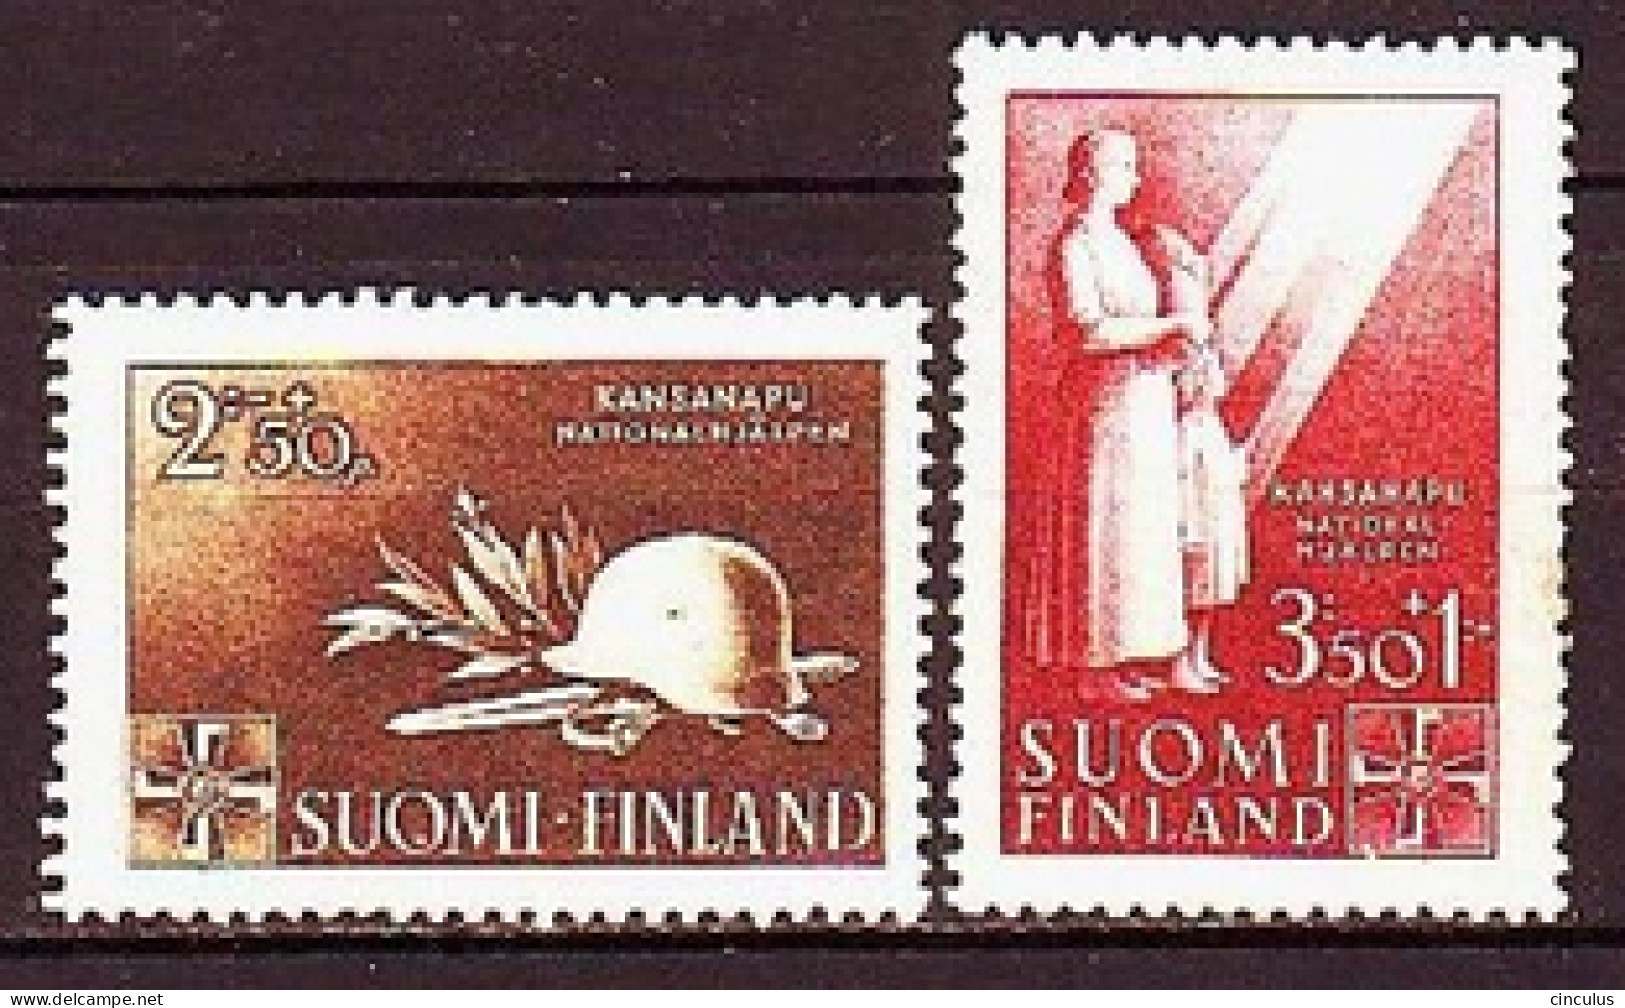 1943. Finland. National Aid. MNH. Mi. Nr. 275-76 - Ungebraucht